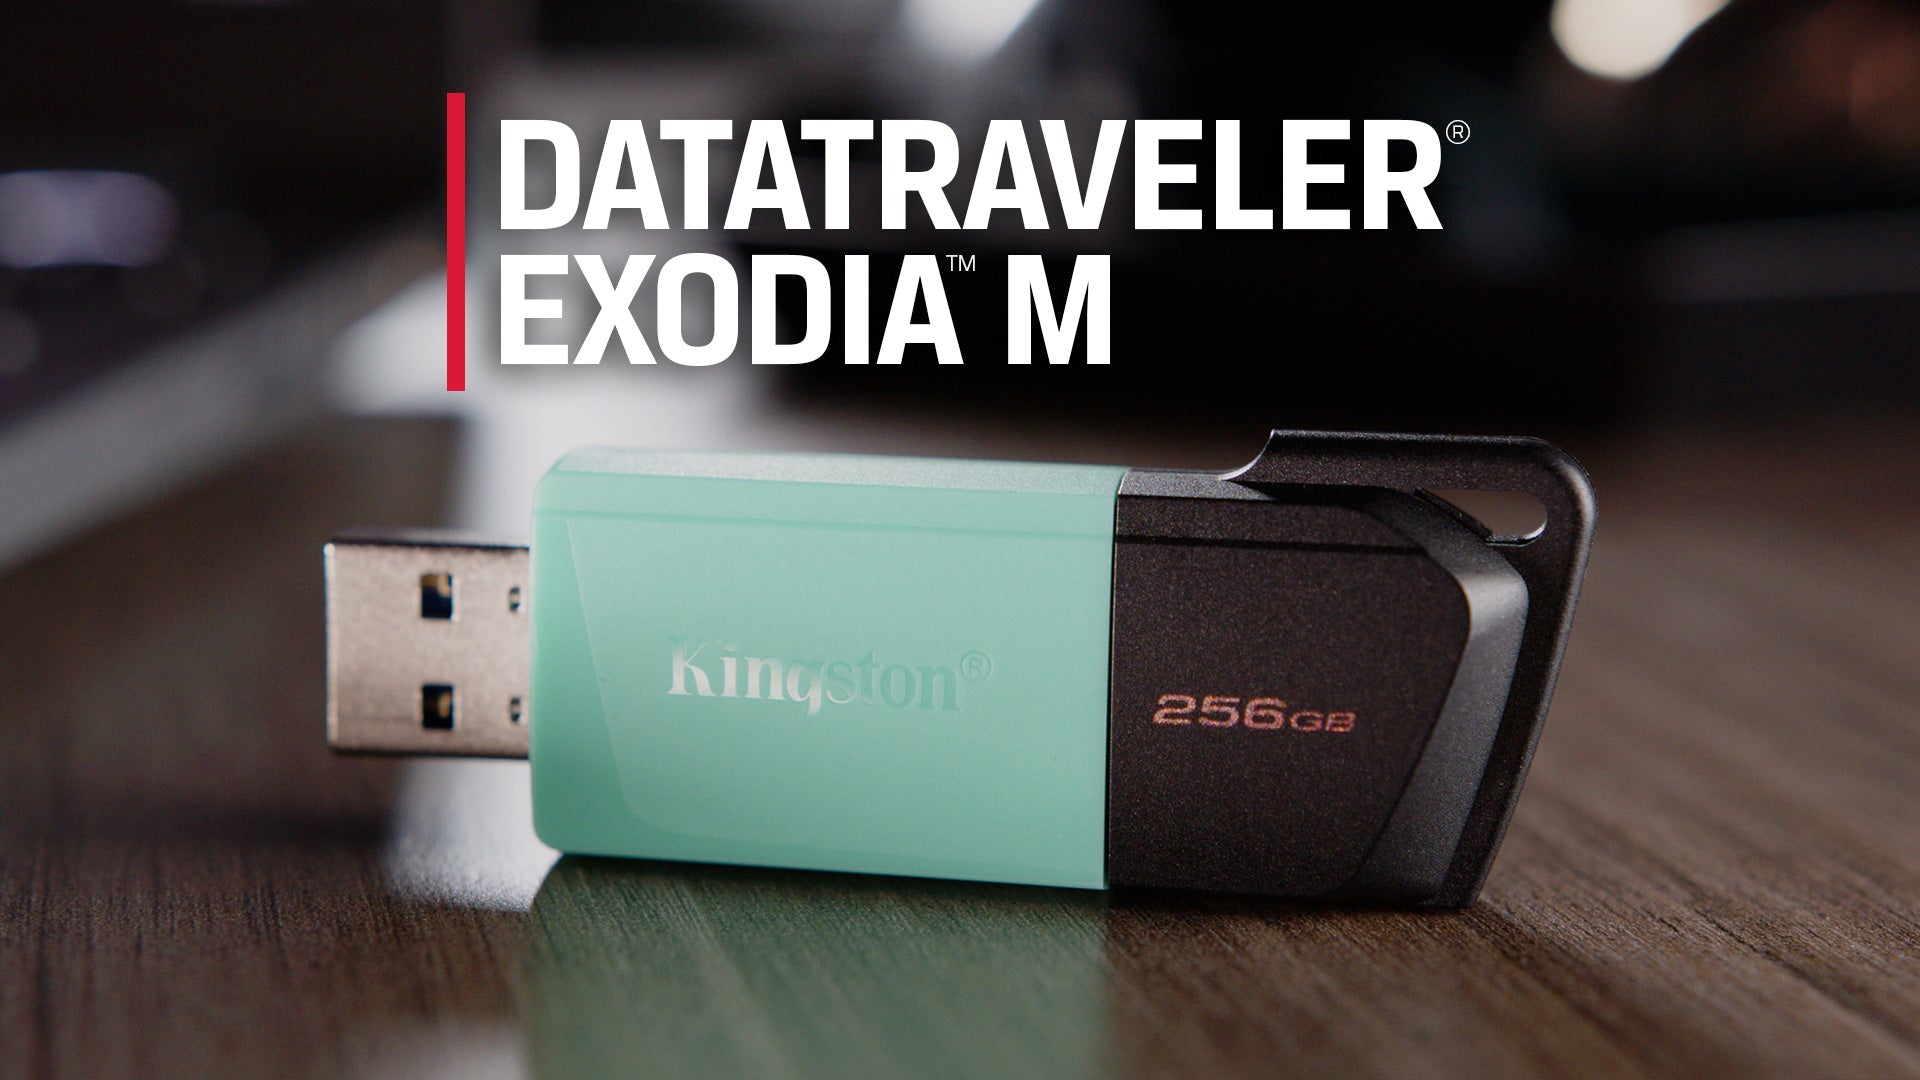 DataTraveler Exodia M USB Flash Drive